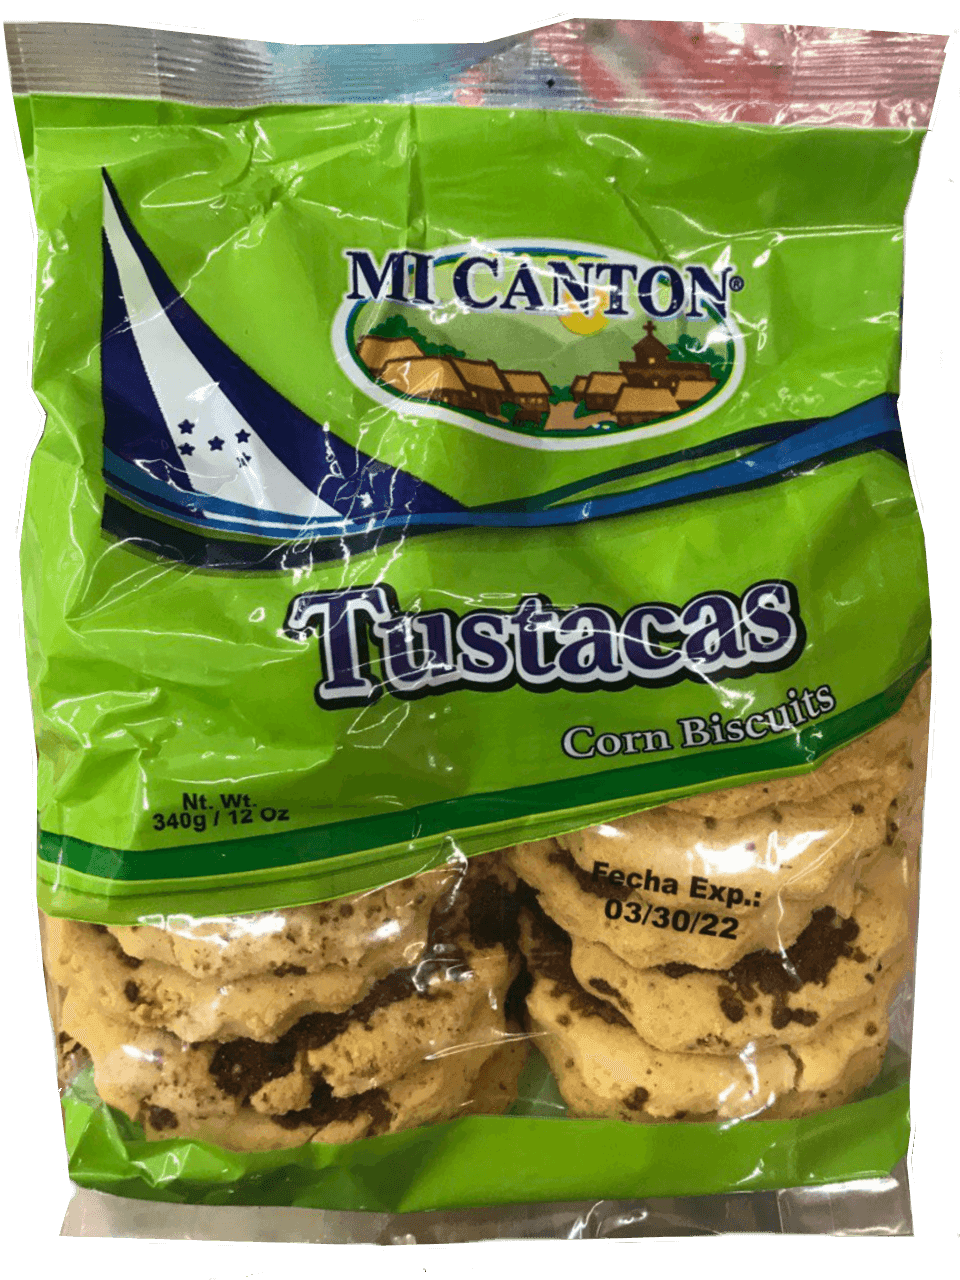 Mi Canton - Tustacas Corn Biscuits 12oz